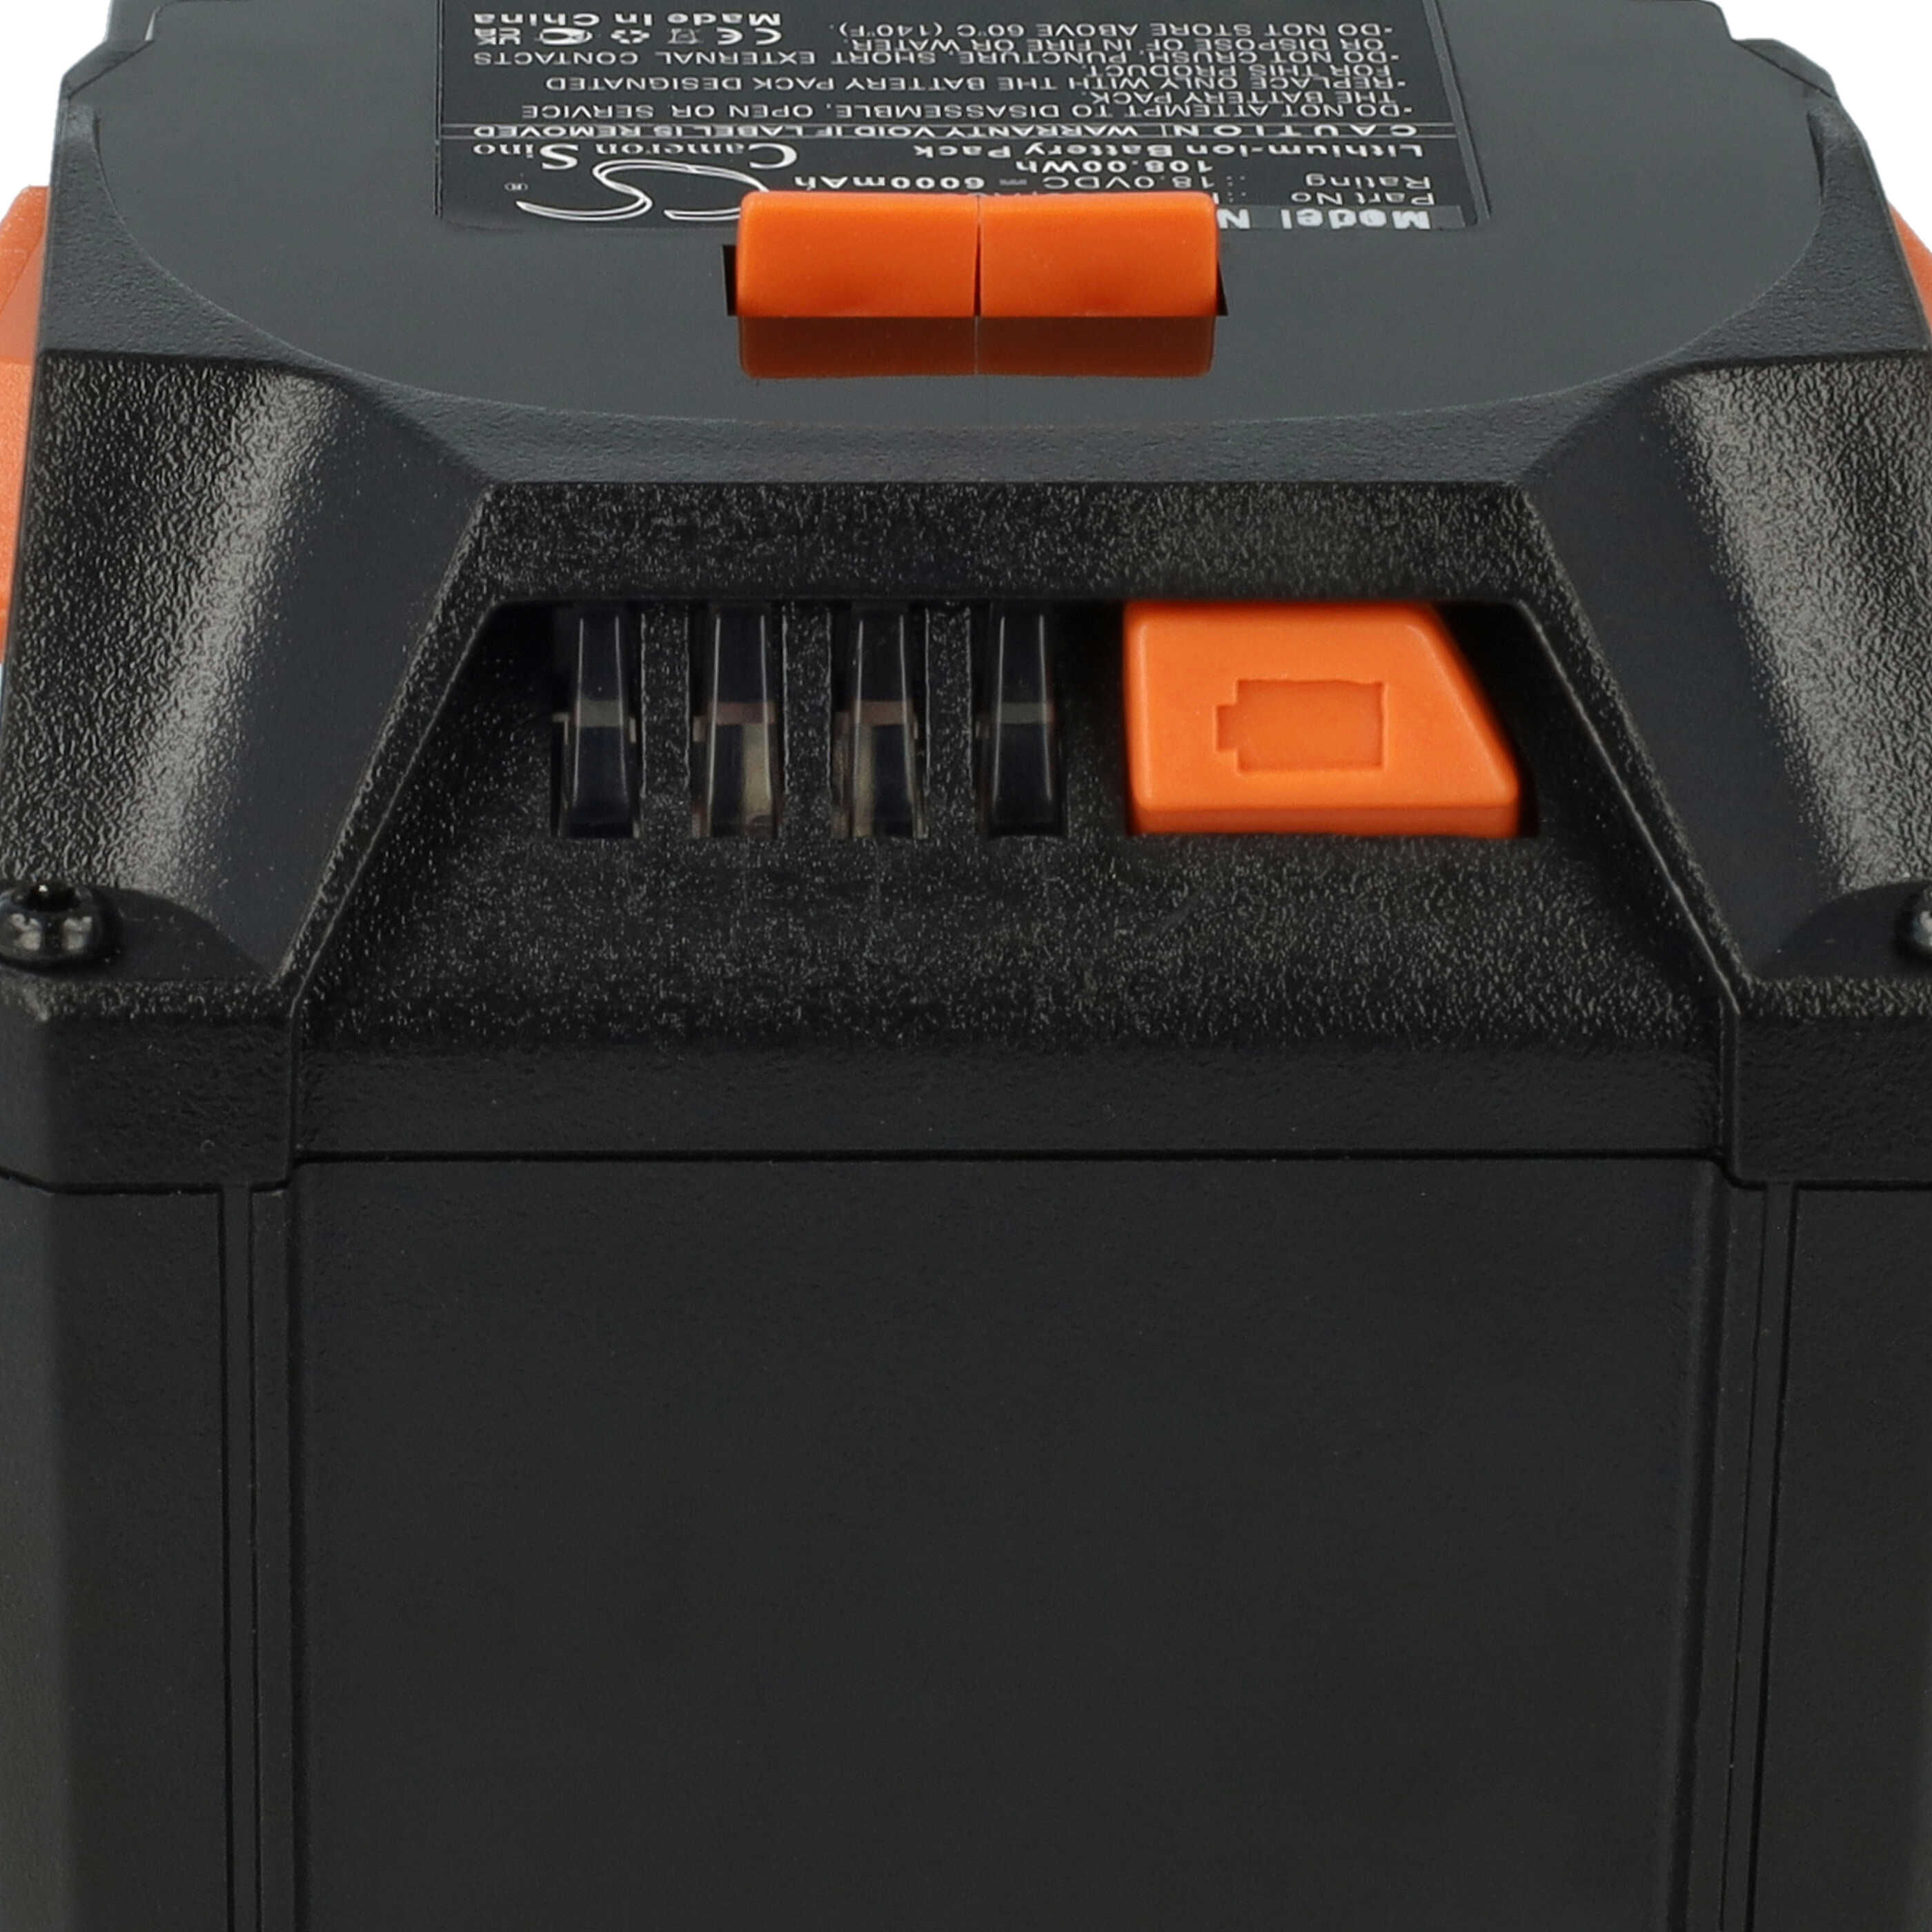 Batterie remplace AEG L1830R, L1815R pour outil électrique - 6000 mAh, 18 V, Li-ion